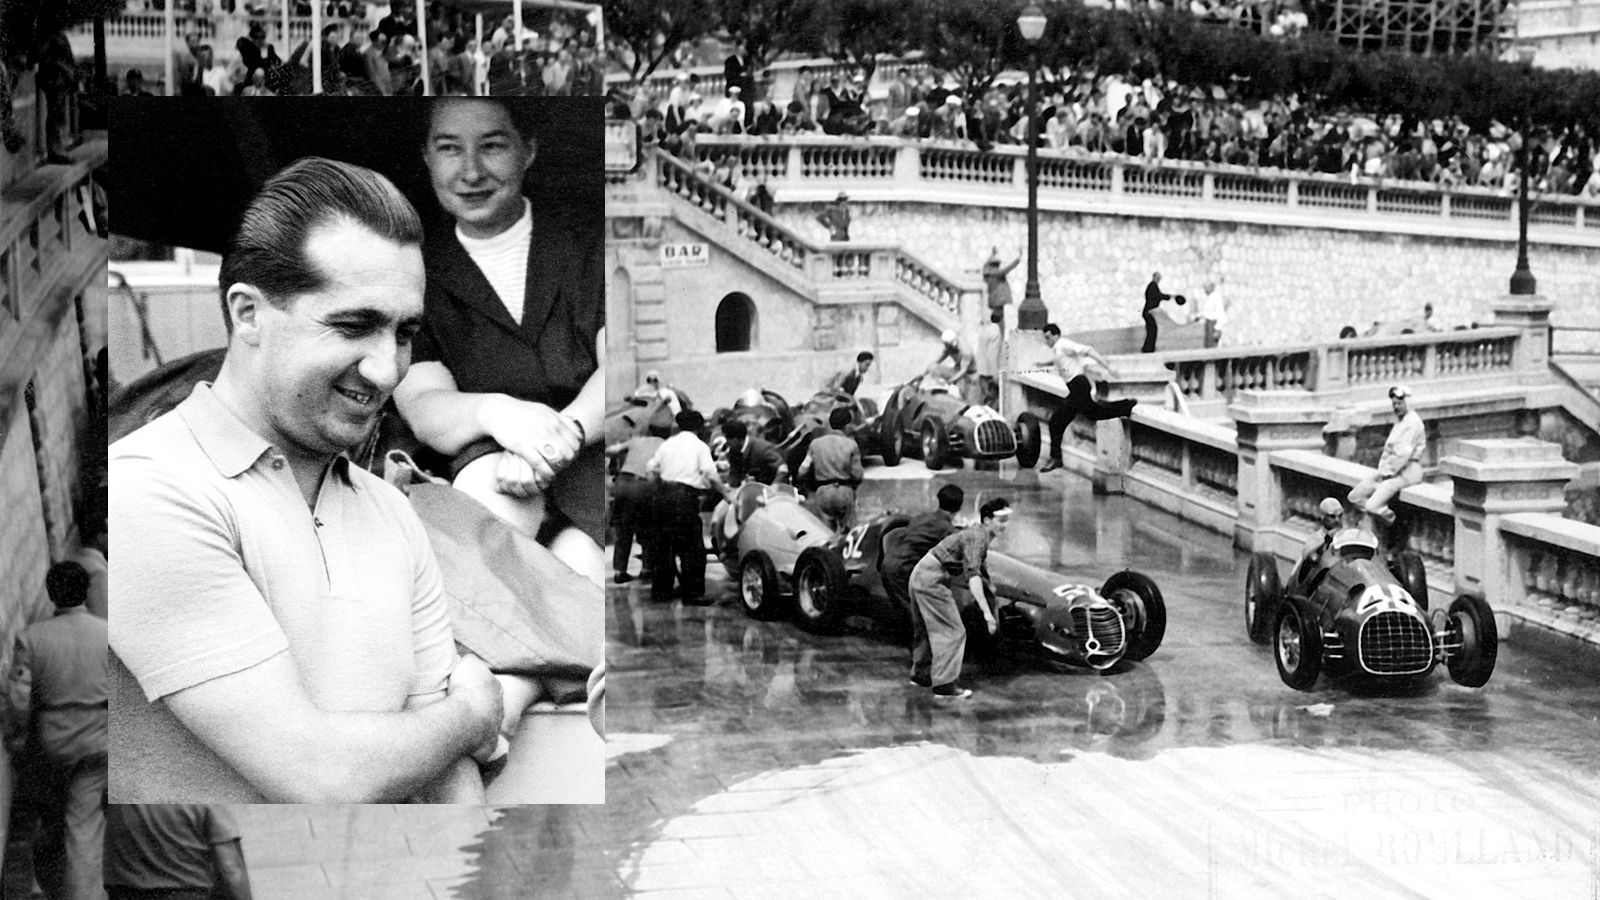 
                <strong>1955: Ascari macht Abflug ins Hafenbecken</strong><br>
                Es war eines der verrücktesten Rennen in Monaco. Alberto Ascari war zu dieser Zeit neben Juan Manuel Fangio der große Star der Formel 1. 1952 und 53 wurde der extrem abergläubige Italiener Weltmeister. Sein Vater Antonio verlor sein Leben bereits 1925 auf der Rennstrecke und auch Alberto verunglückte wenige Tage nach dem Monaco-Rennen 1955 tödlich in Monza. Dabei sprang er in Monte Carlo dem Tod noch von der Schippe. Mit viel zu hoher Geschwindigkeit bretterte er aus dem Tunnel und nahm auf seinem Weg Holzbretter, Sandsäcke und Strohballen mit. Schließlich stürzte er mit seinem Lancia ins Hafenbecken. Nach kurzem Bangen tauchte Ascari auf und wurde von Helfern an Land gezogen. Nur vier Tage später geschah dann der folgenschwere Crash in Monza.
              